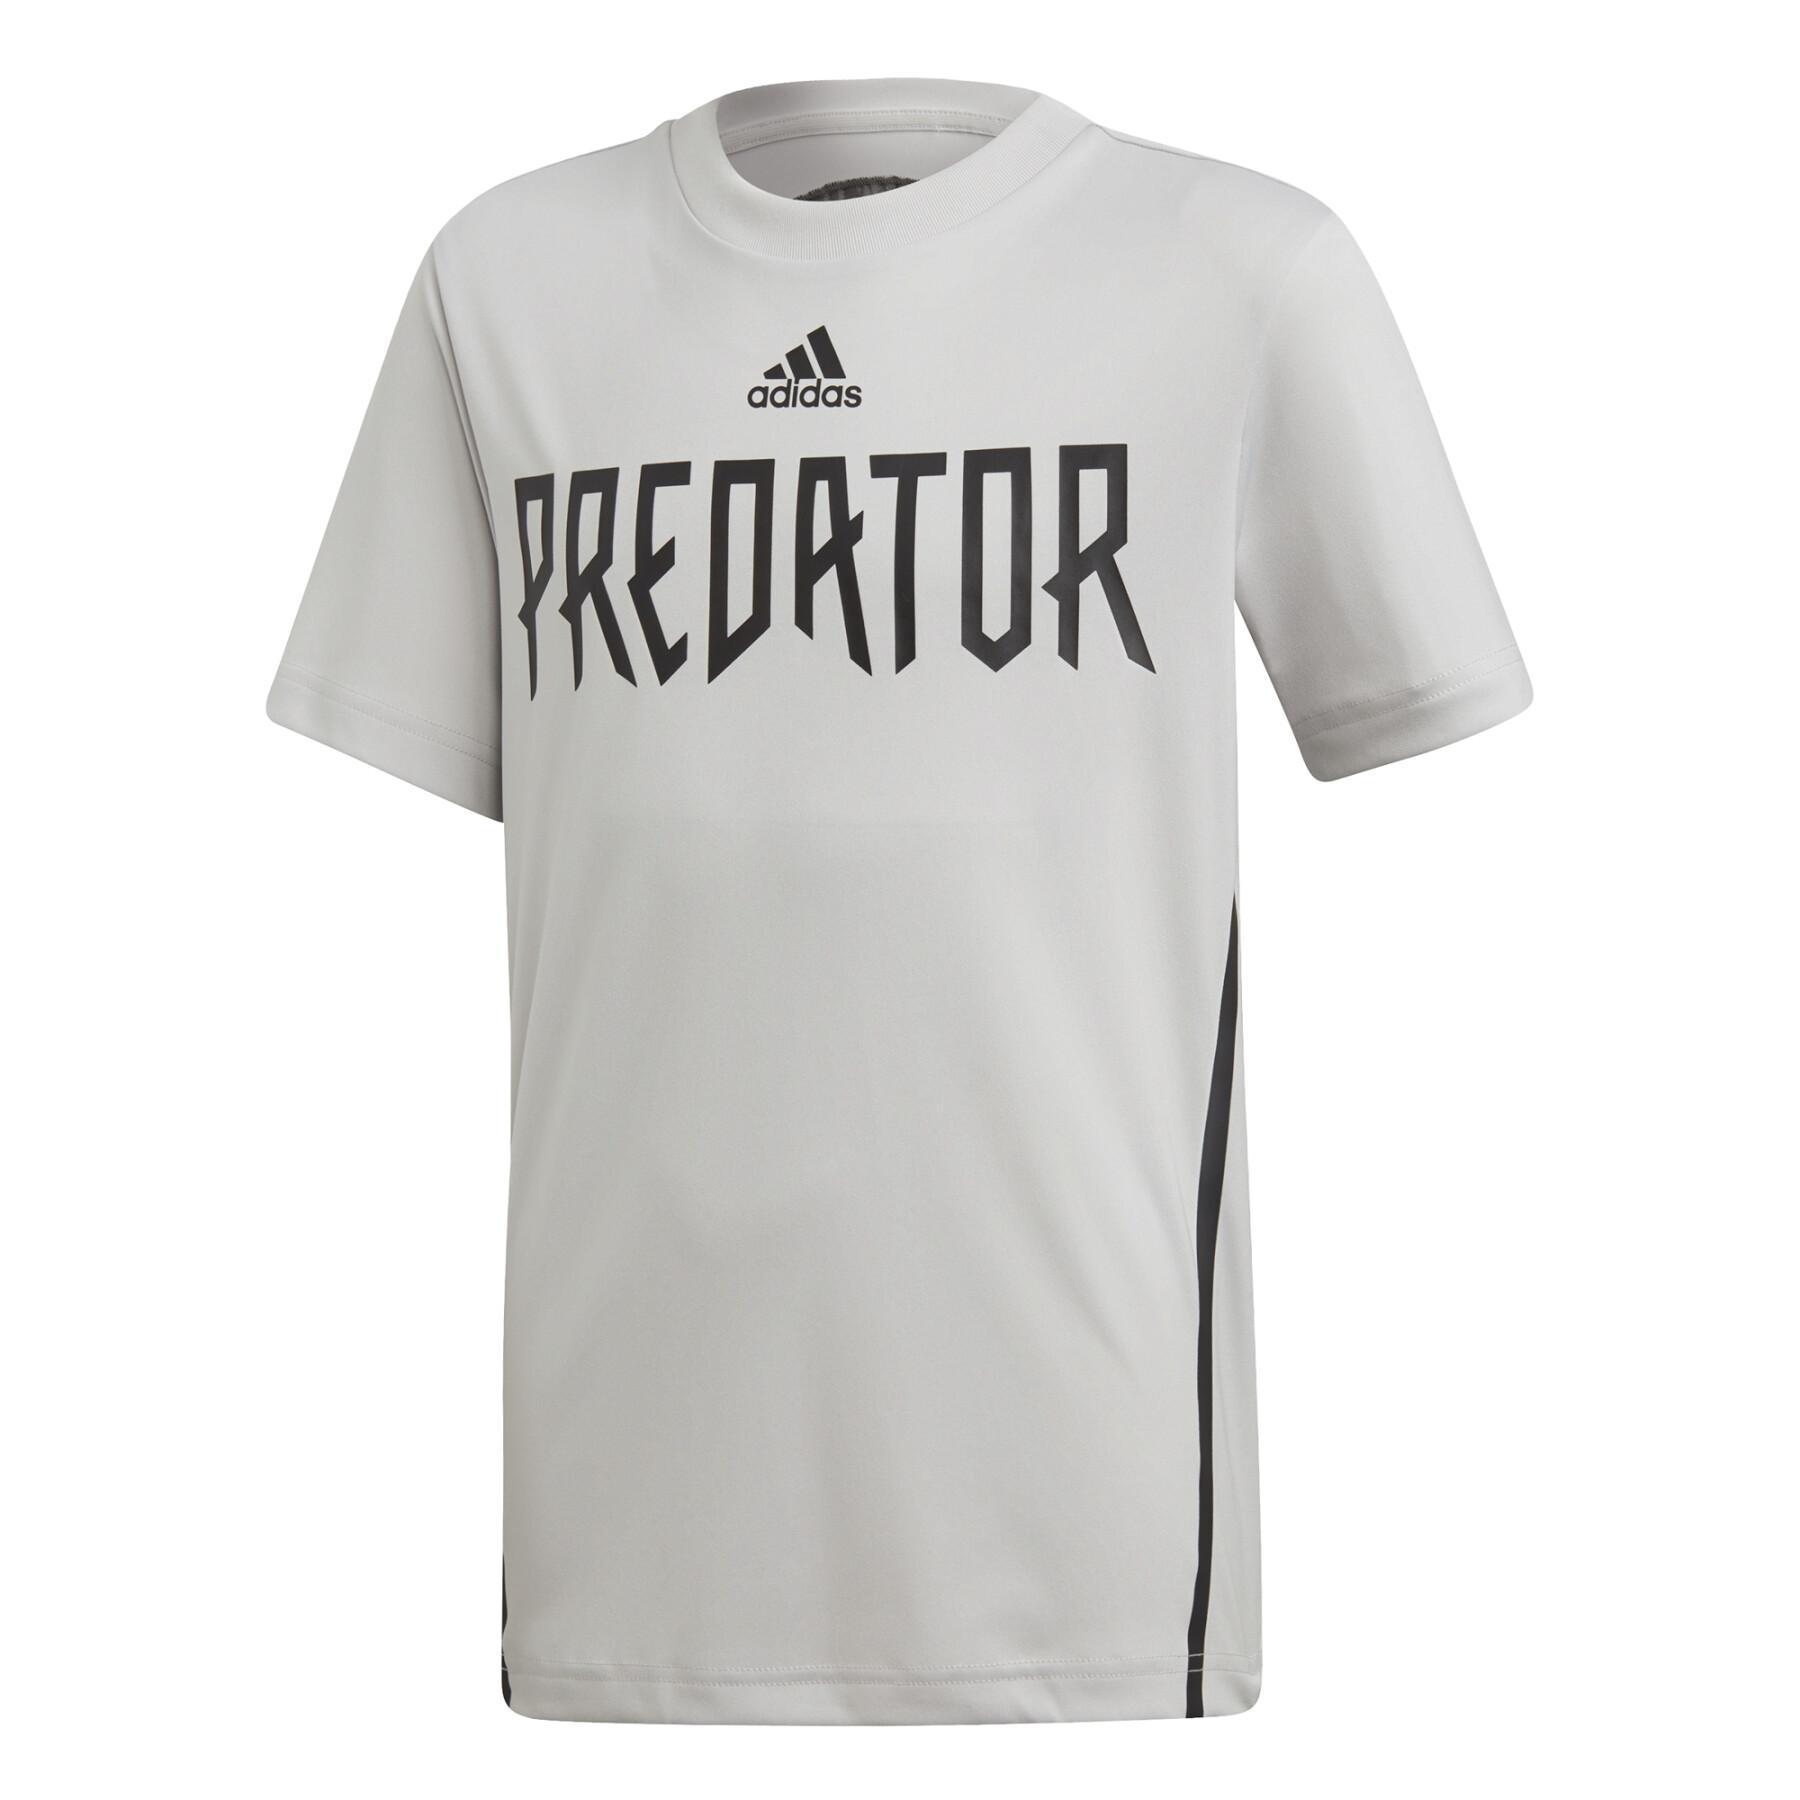 Children's jersey adidas Predator